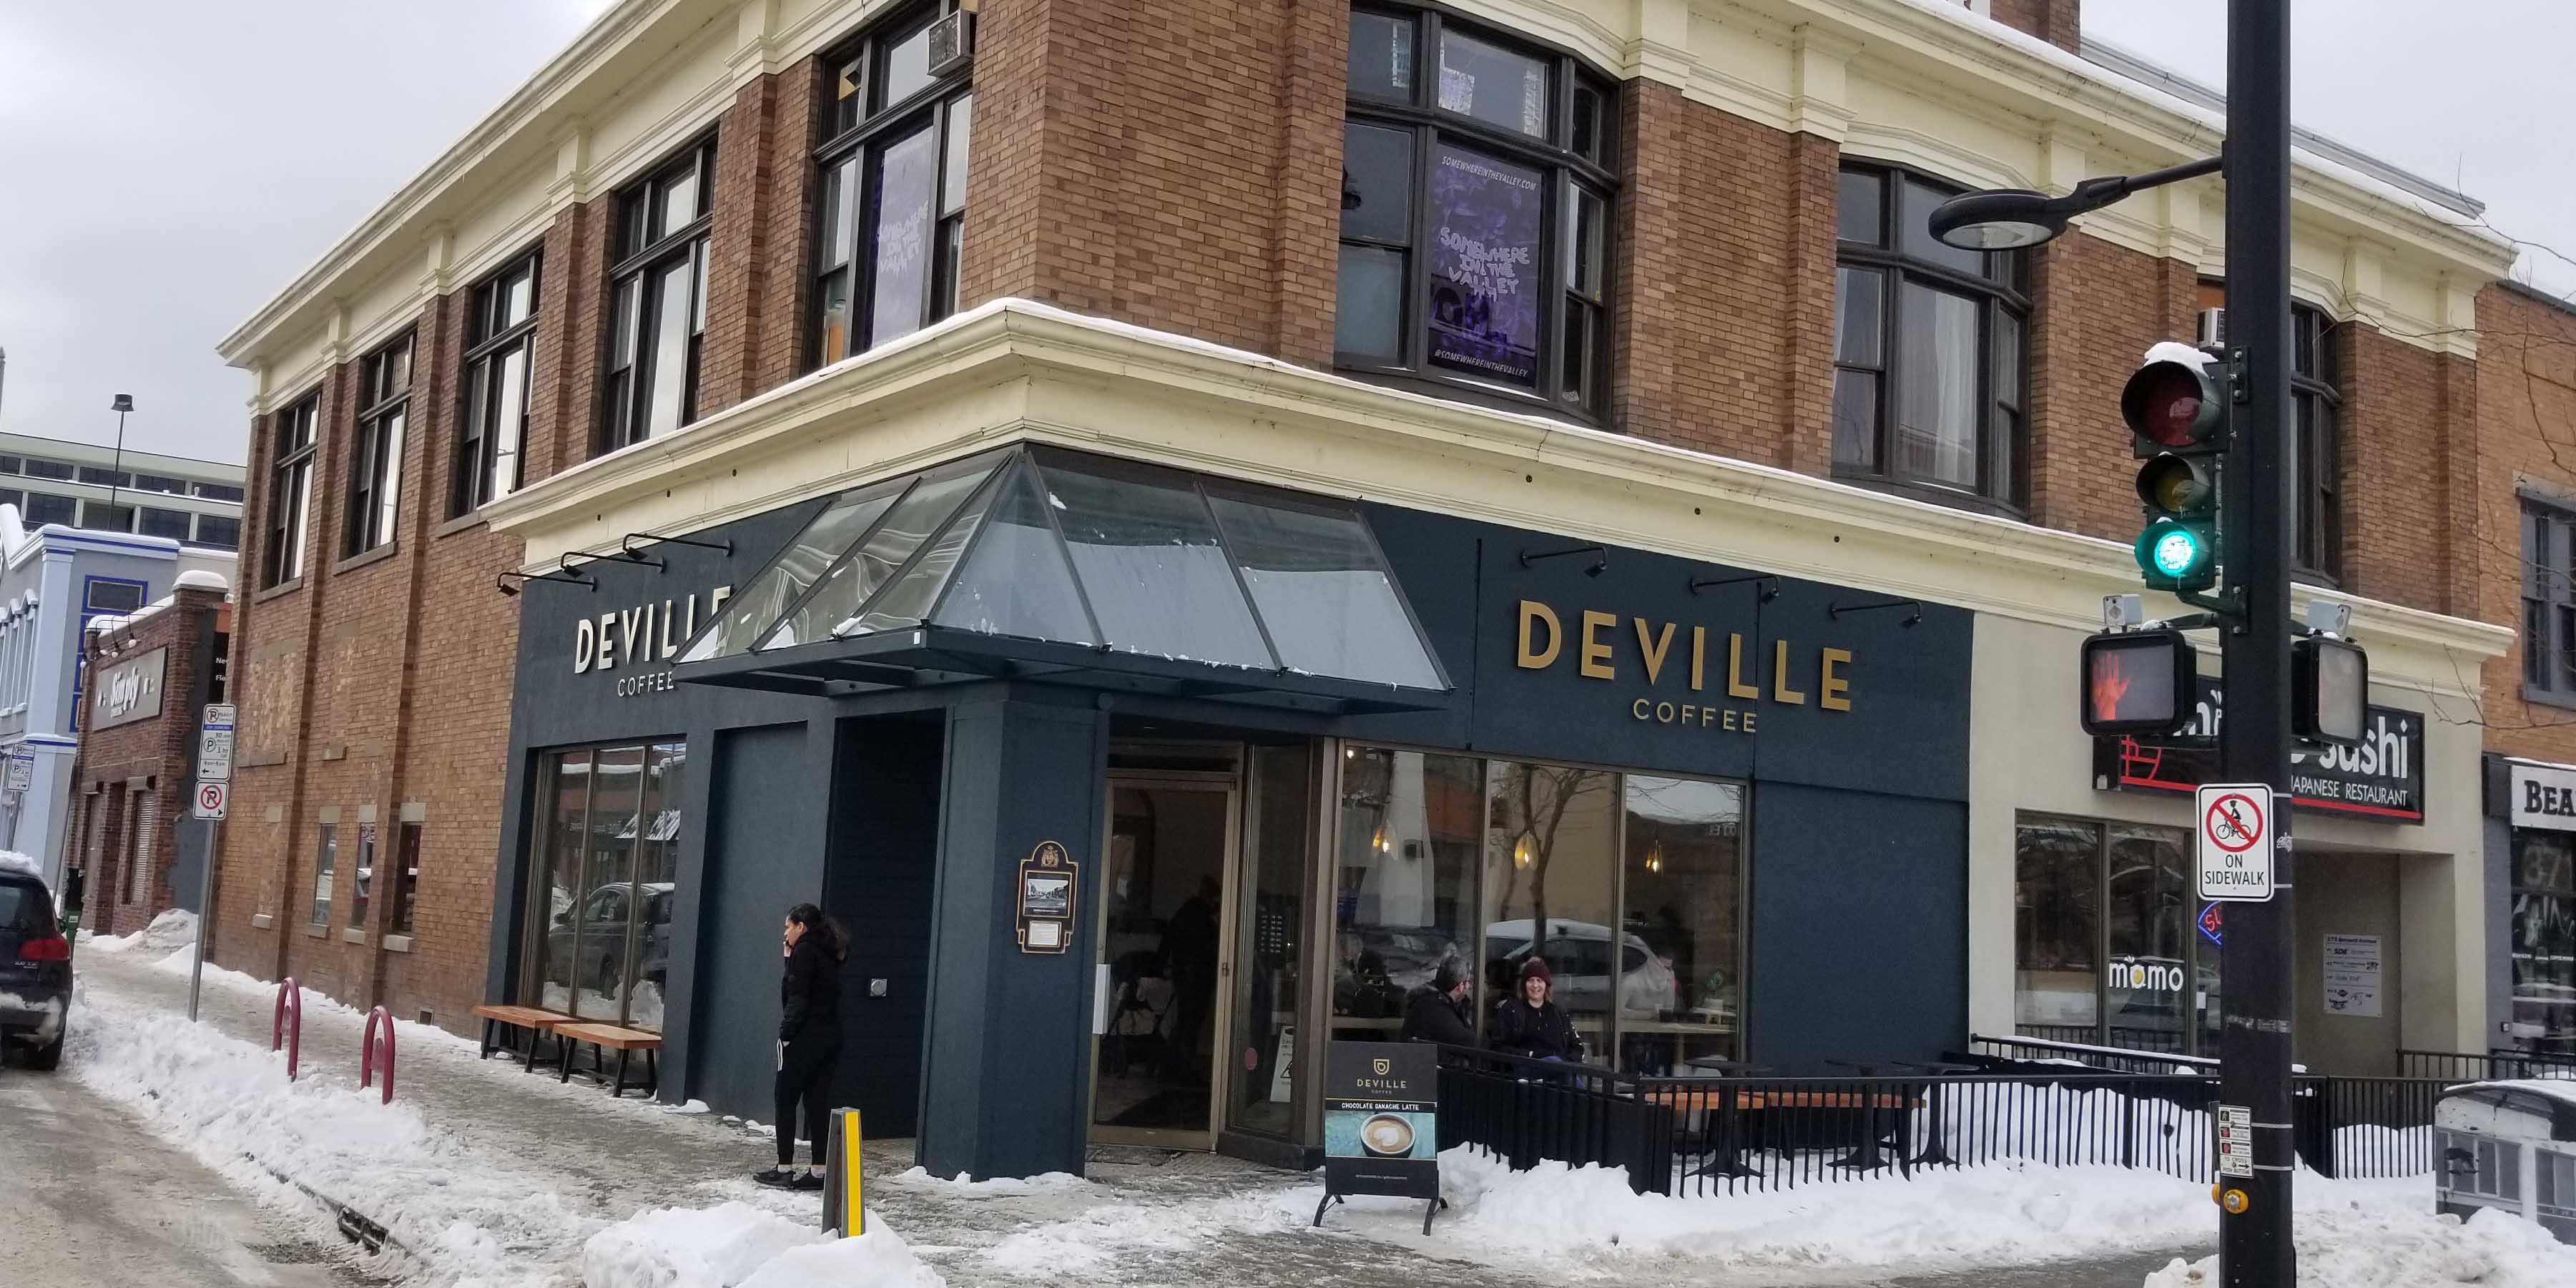 Deville Coffee on Bernard Ave in Kelowna